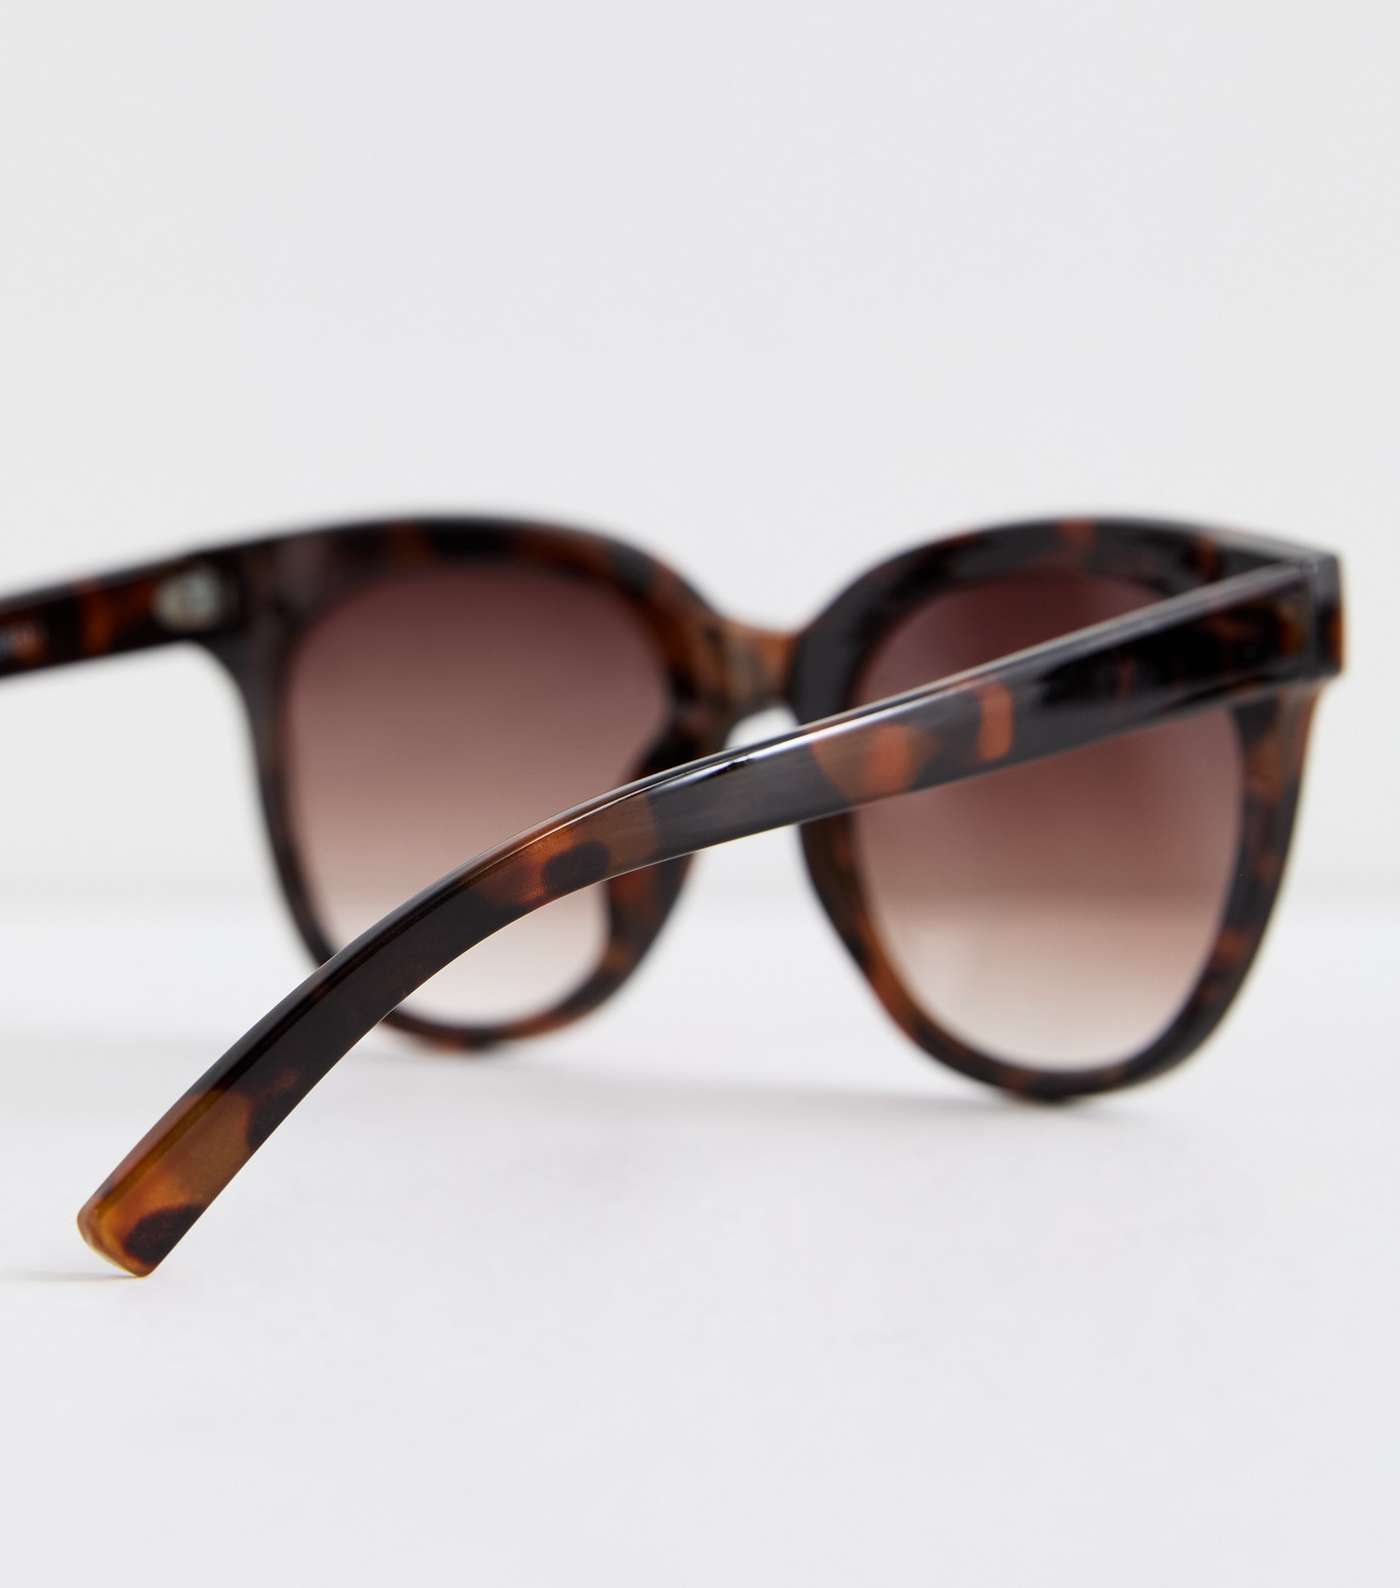 Dark Brown Tortoiseshell Effect Round Frame Sunglasses Image 4